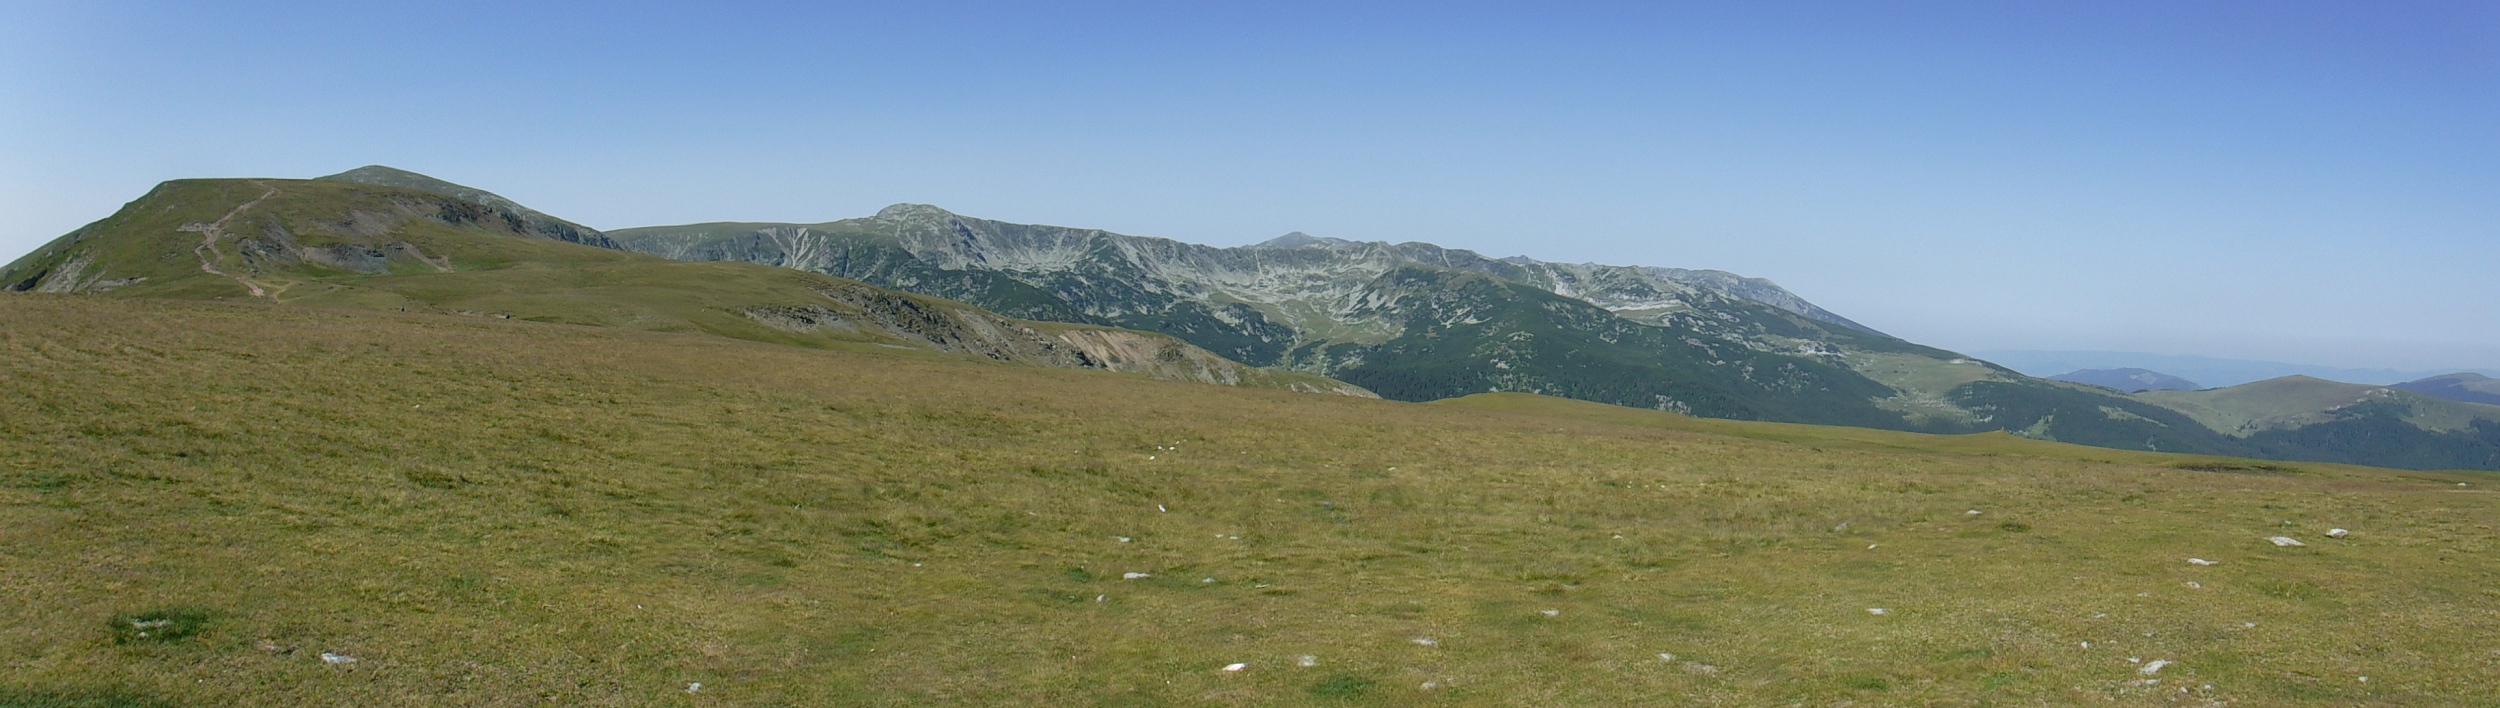 Munții Paring / Pohled na hlavní hřeben od východu, ze silnice DN67C "Transalpina" (od parkoviště s tržištěm a občerstvením).